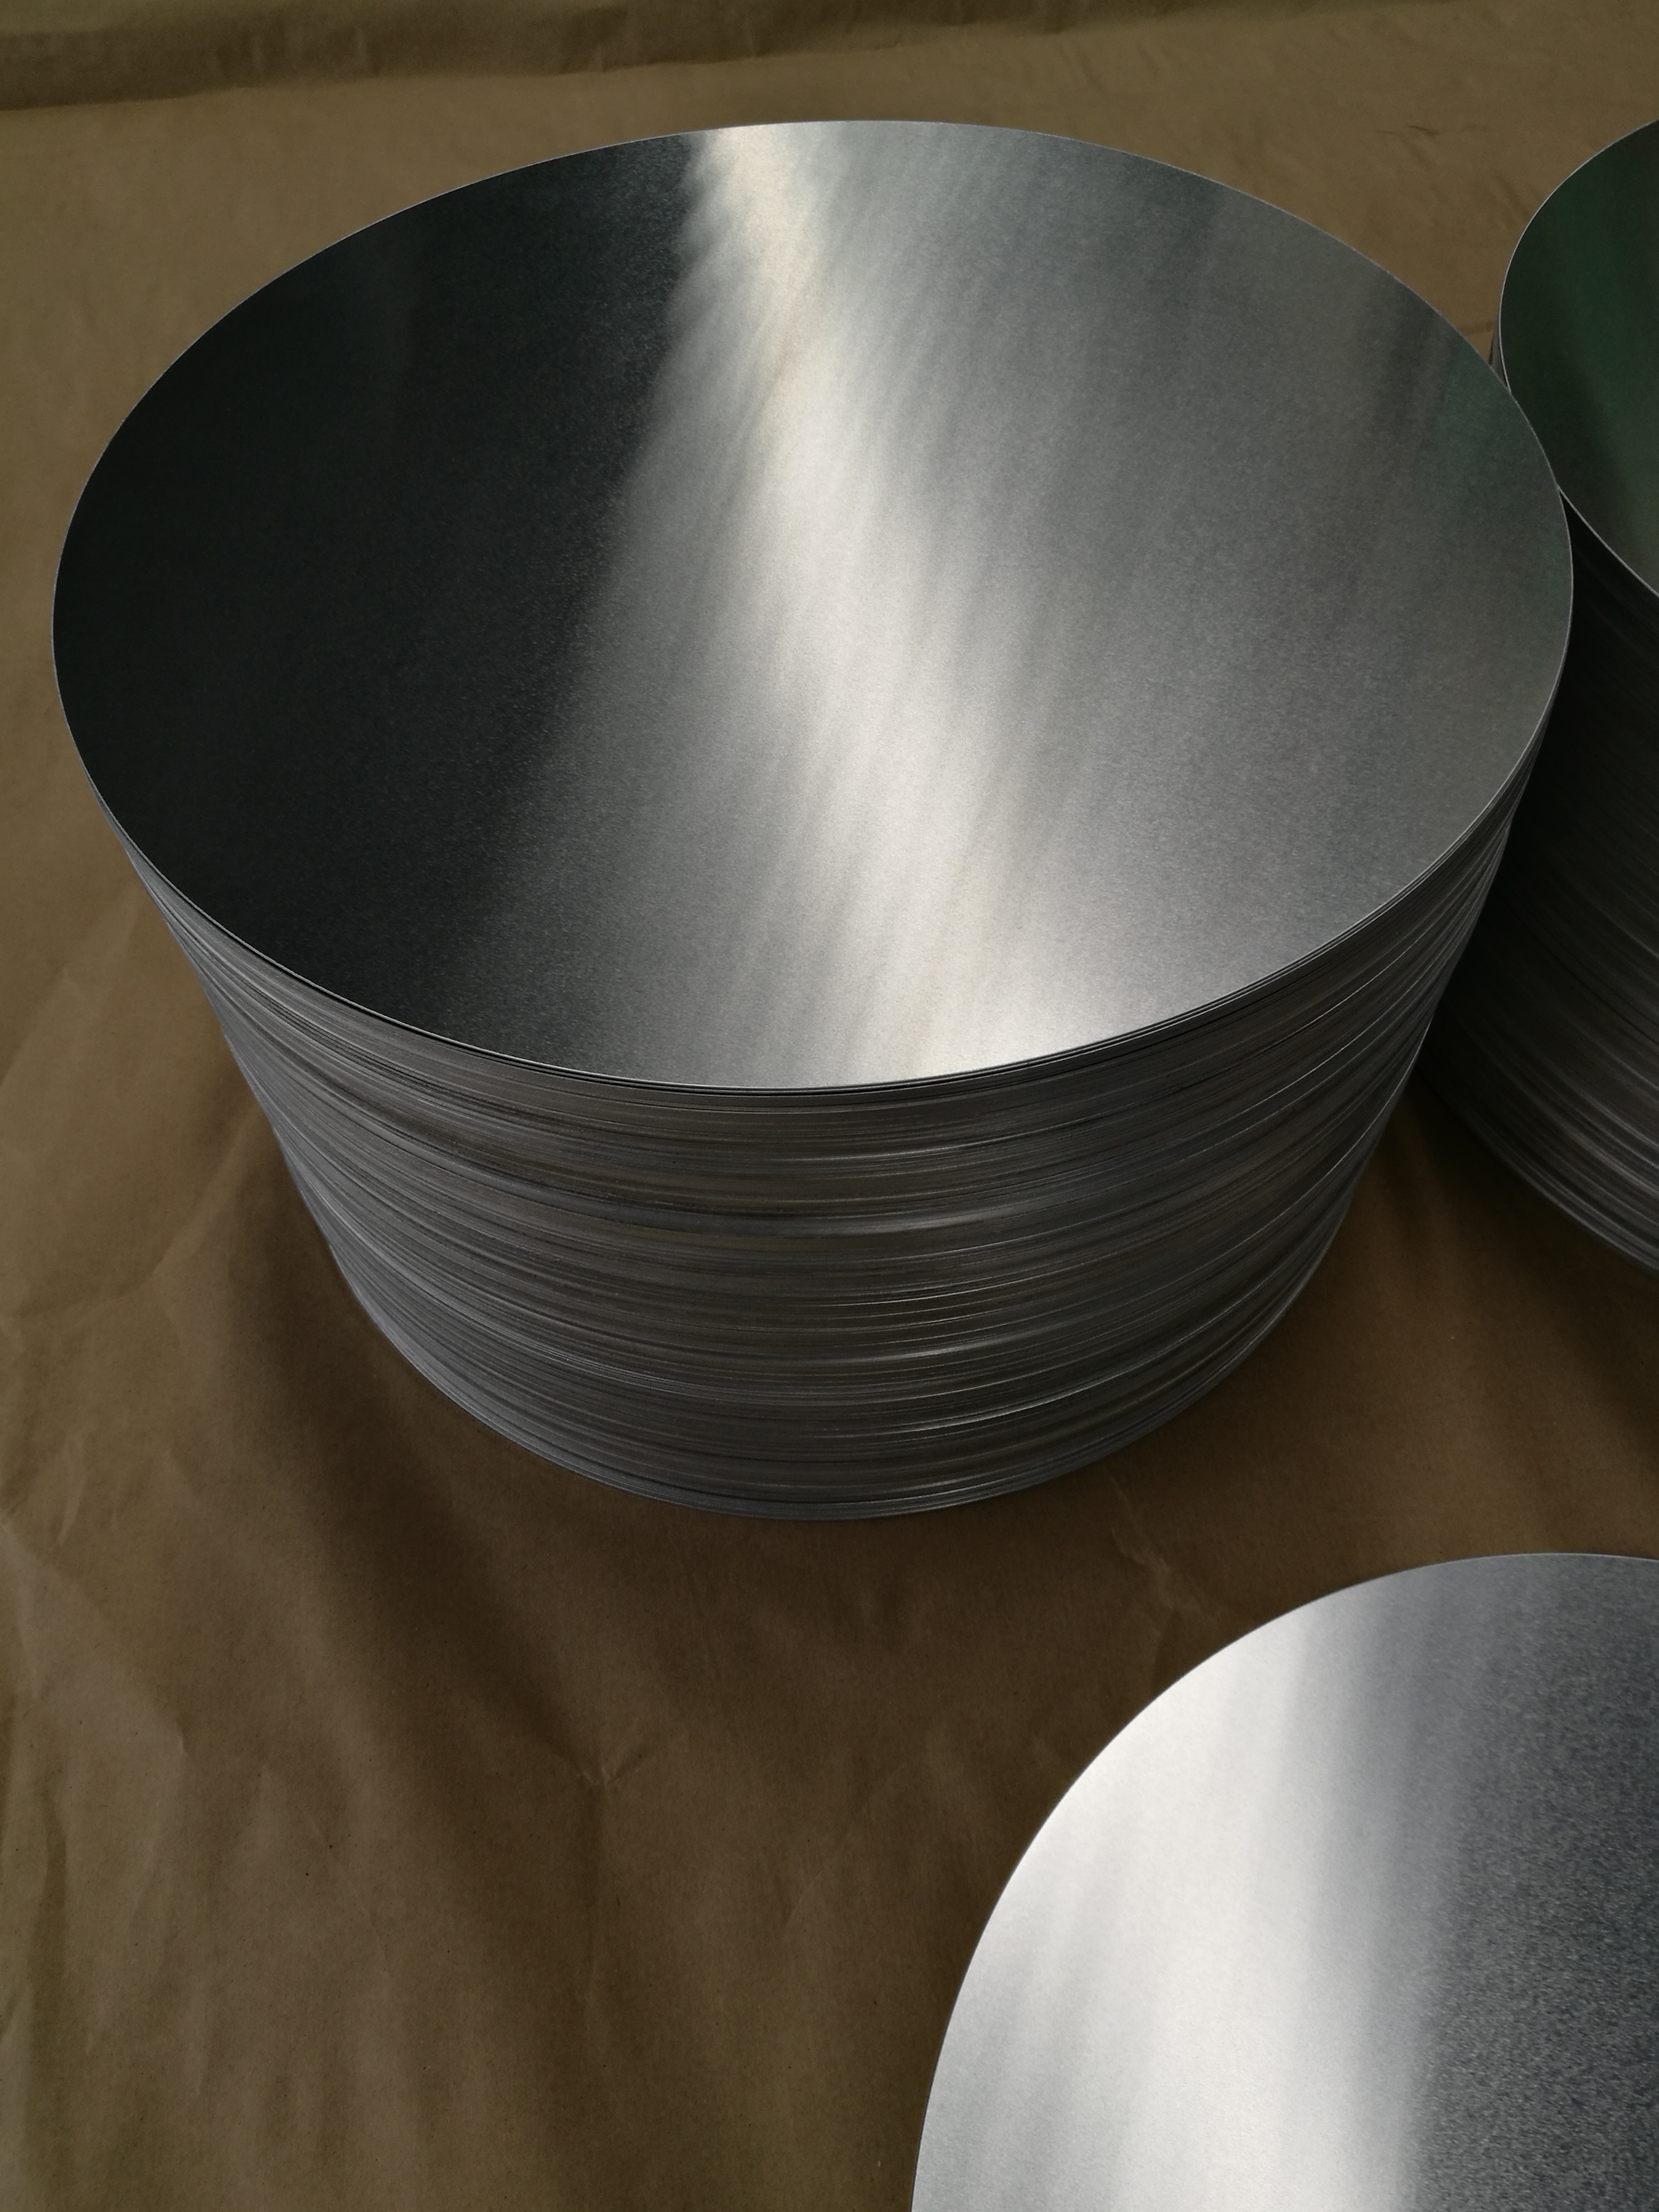 熱軋鋁圓片有哪些廣泛應用